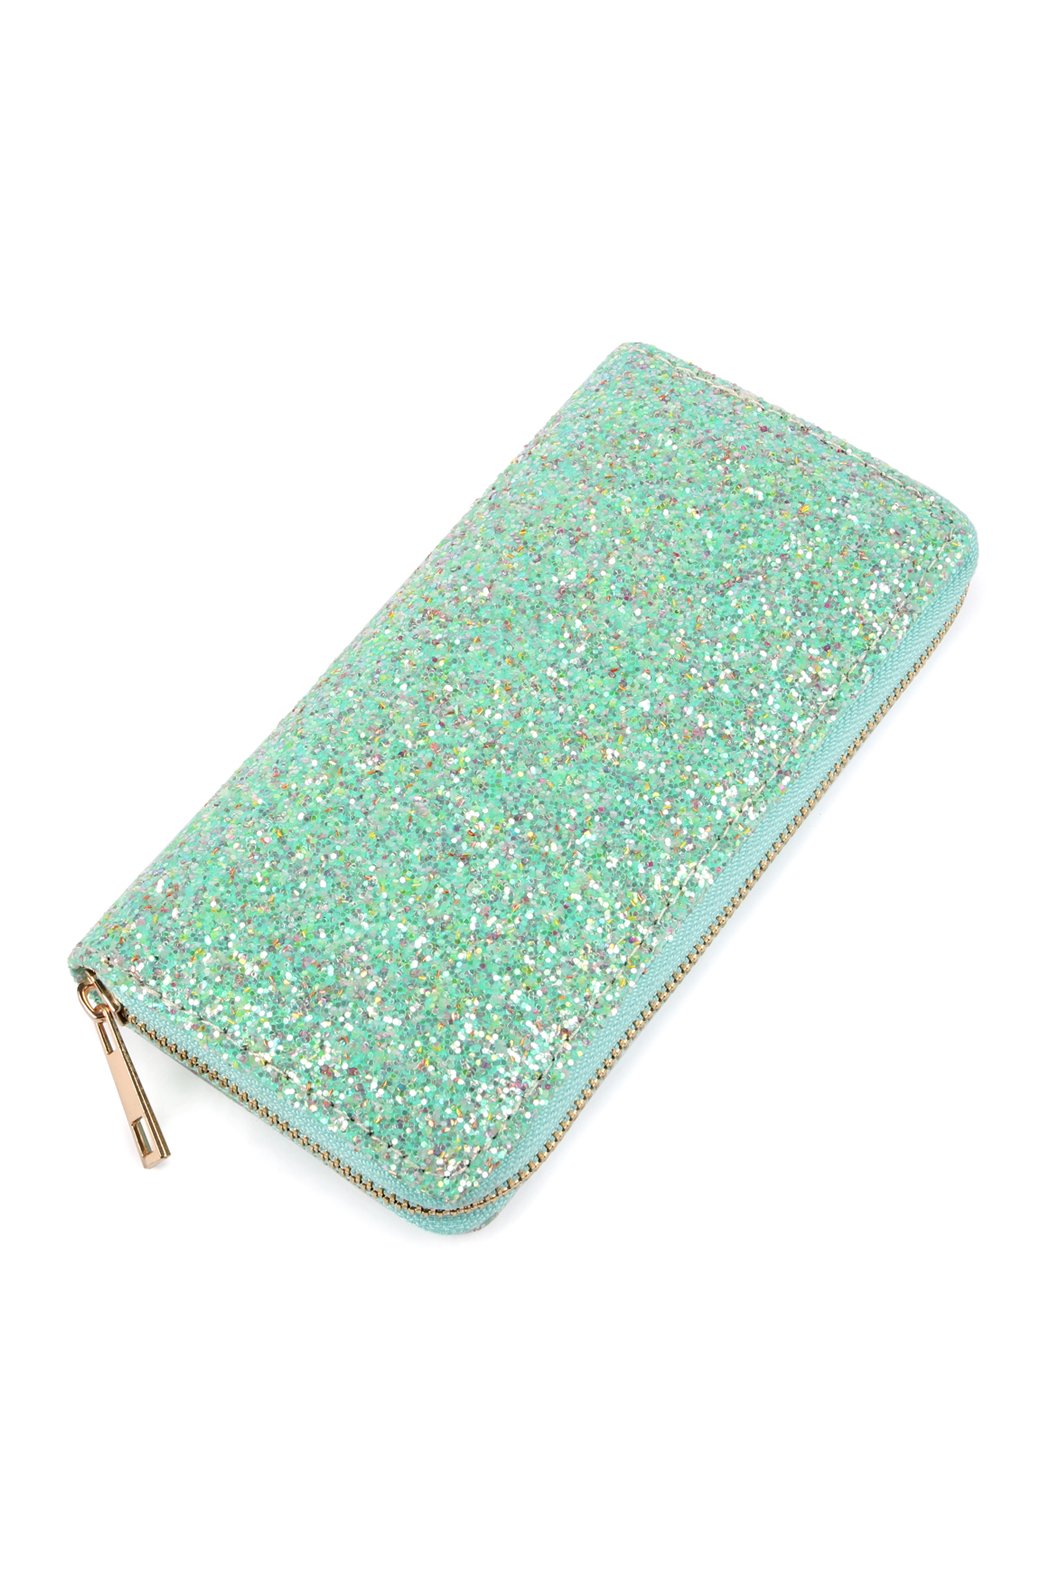 Hdg1883 - Glitter Zipper Wallet